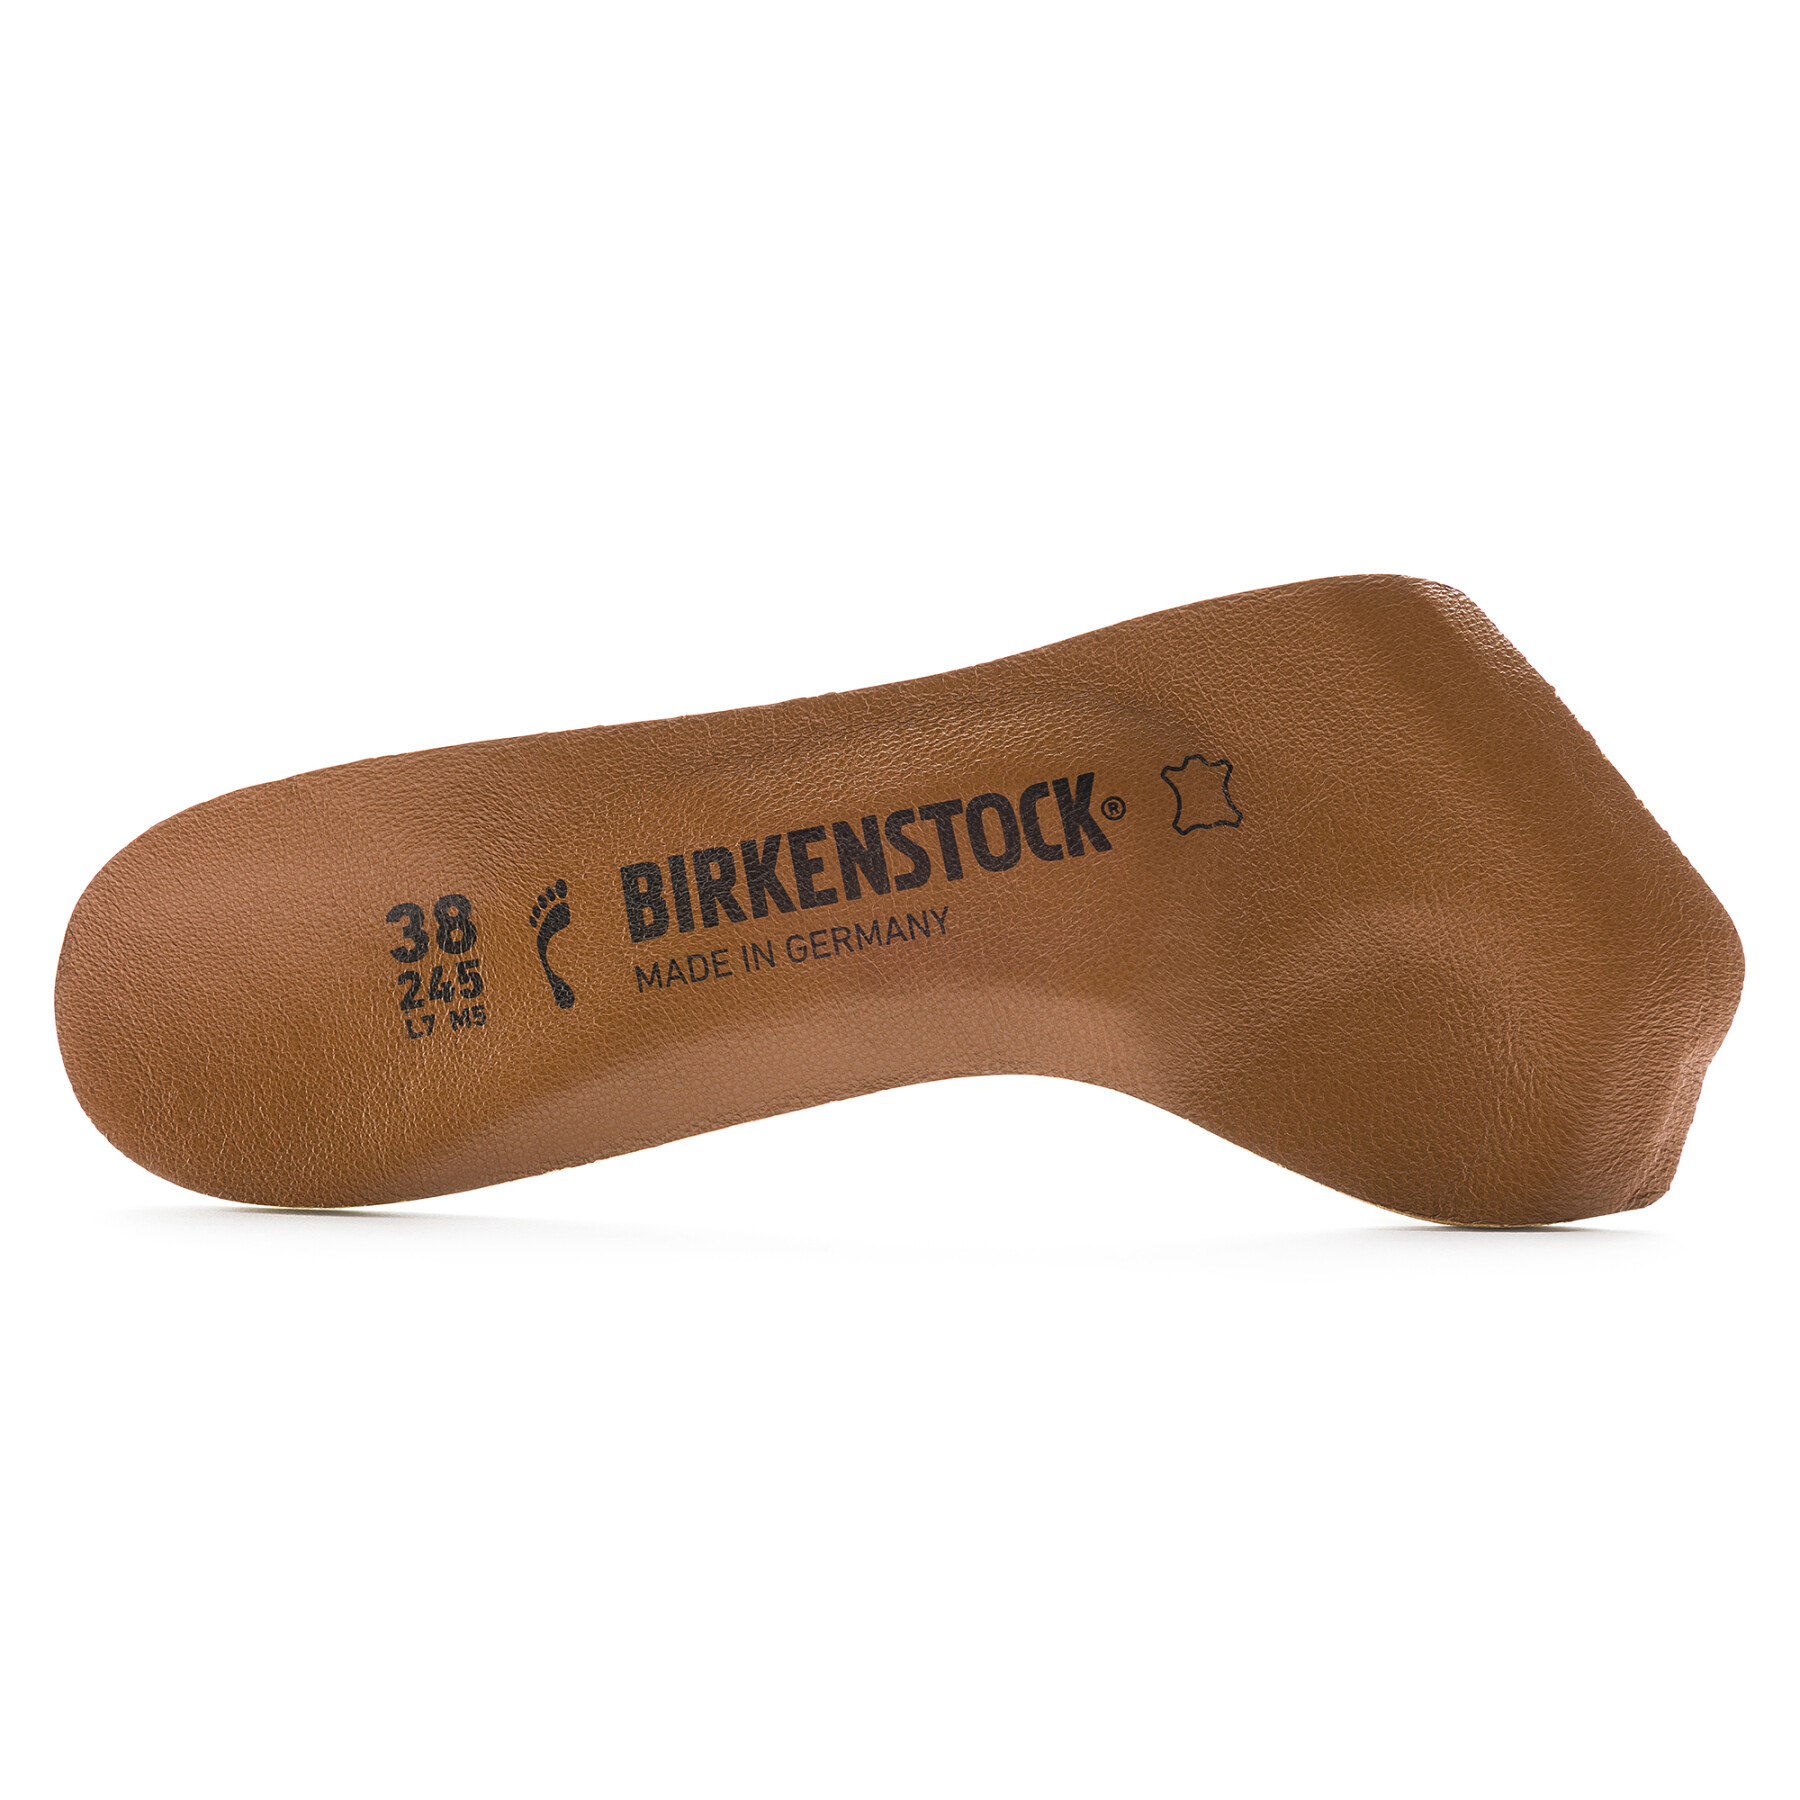 Suelas Birkenstock Comfort Toeless Natural Leather